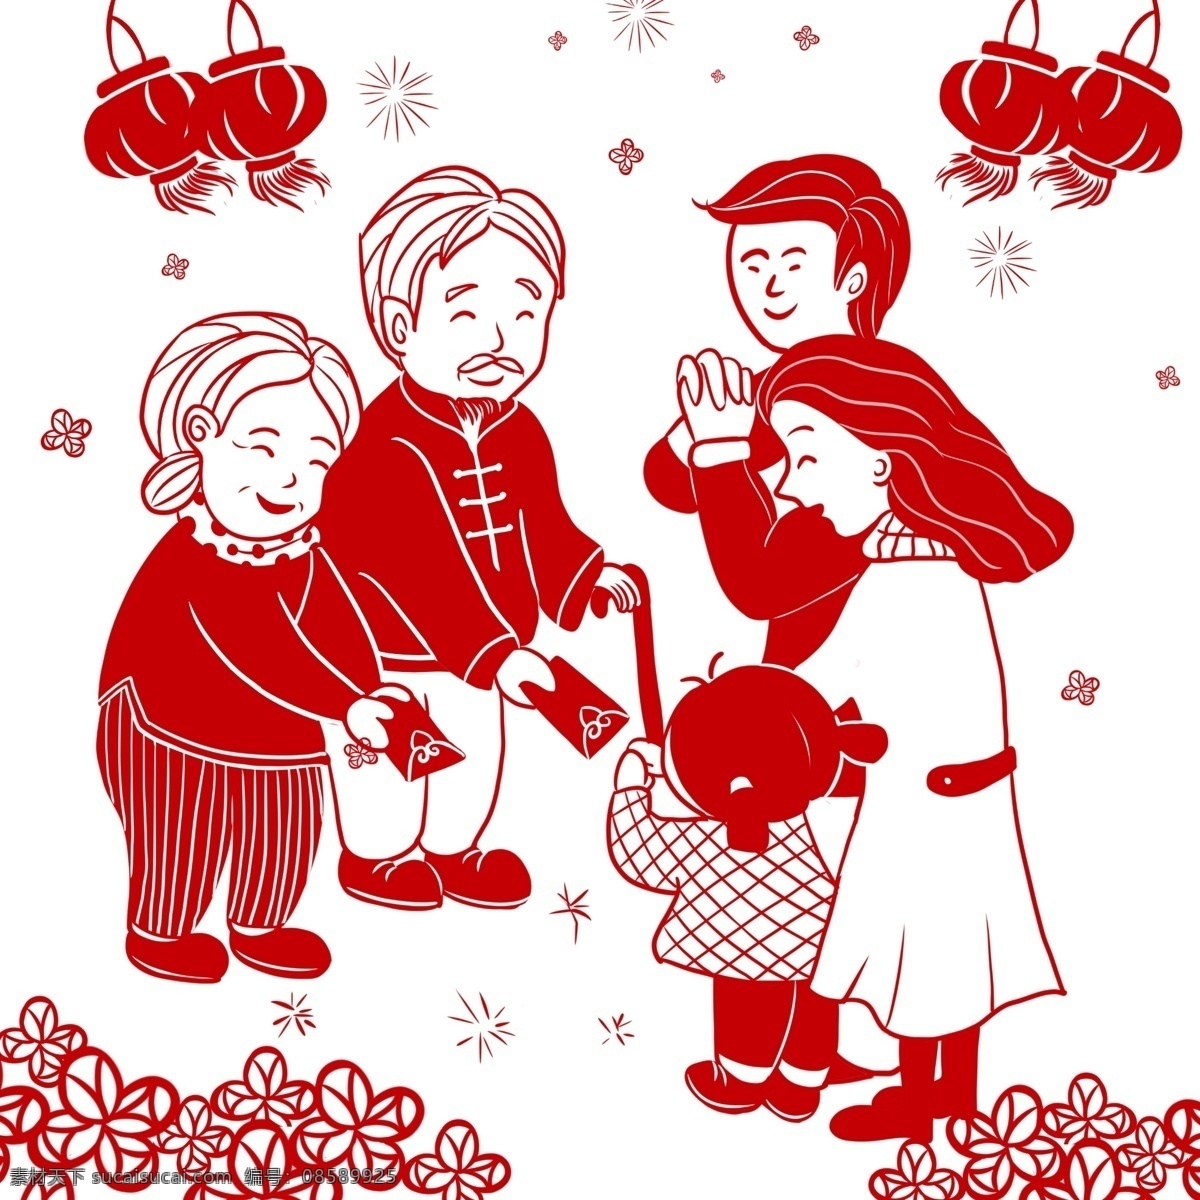 新年 手绘 卡通 一家人 新春快乐 吉祥 幸福 如意 中国风 剪纸 一家人爸爸 妈妈 孩子 爷爷 奶奶 节日喜庆